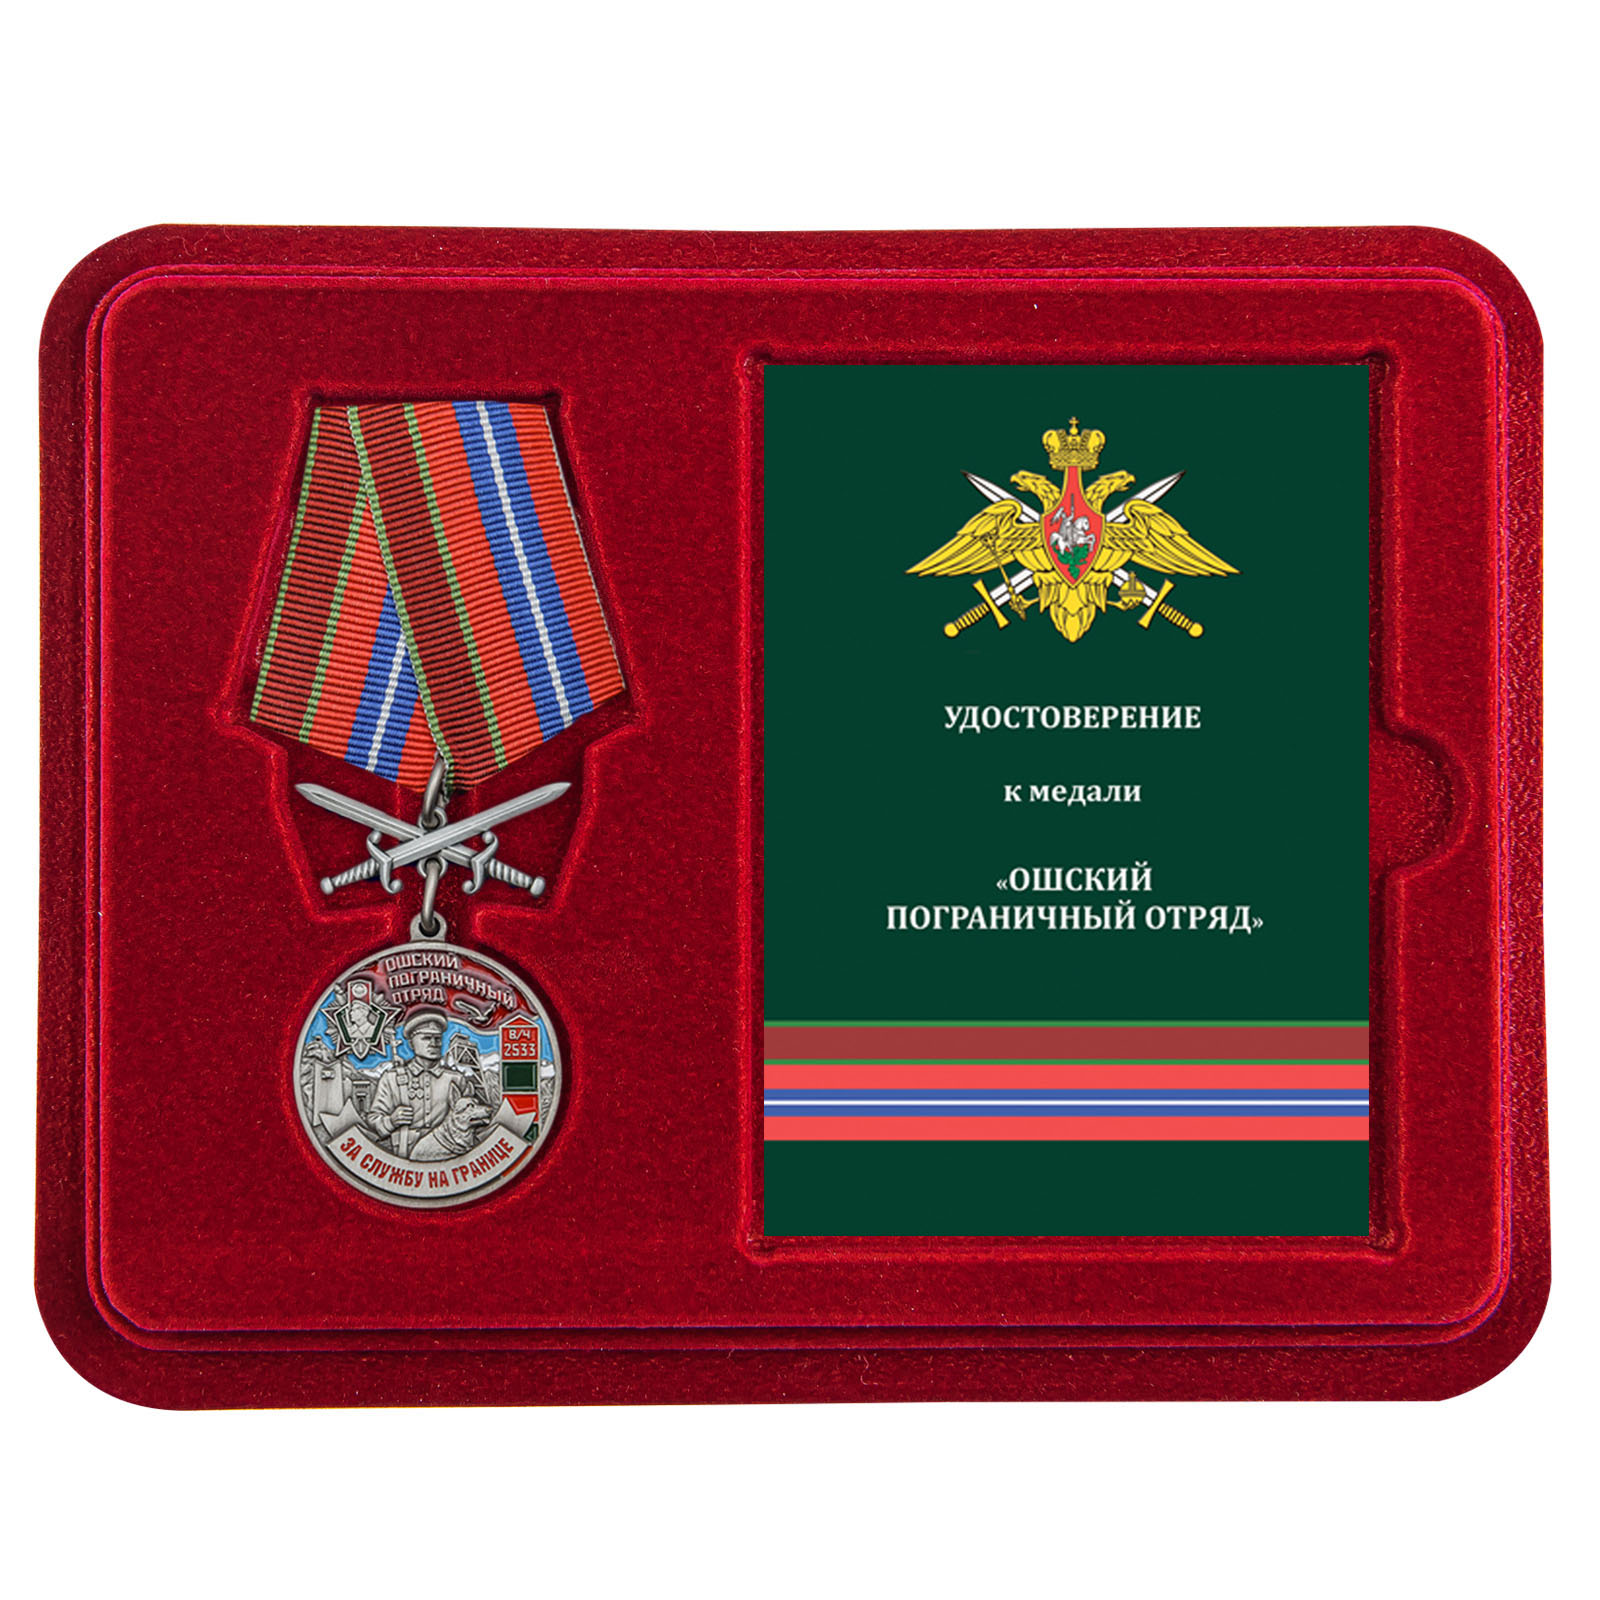 Купить медаль За службу в Ошском пограничном отряде в подарок с доставкой